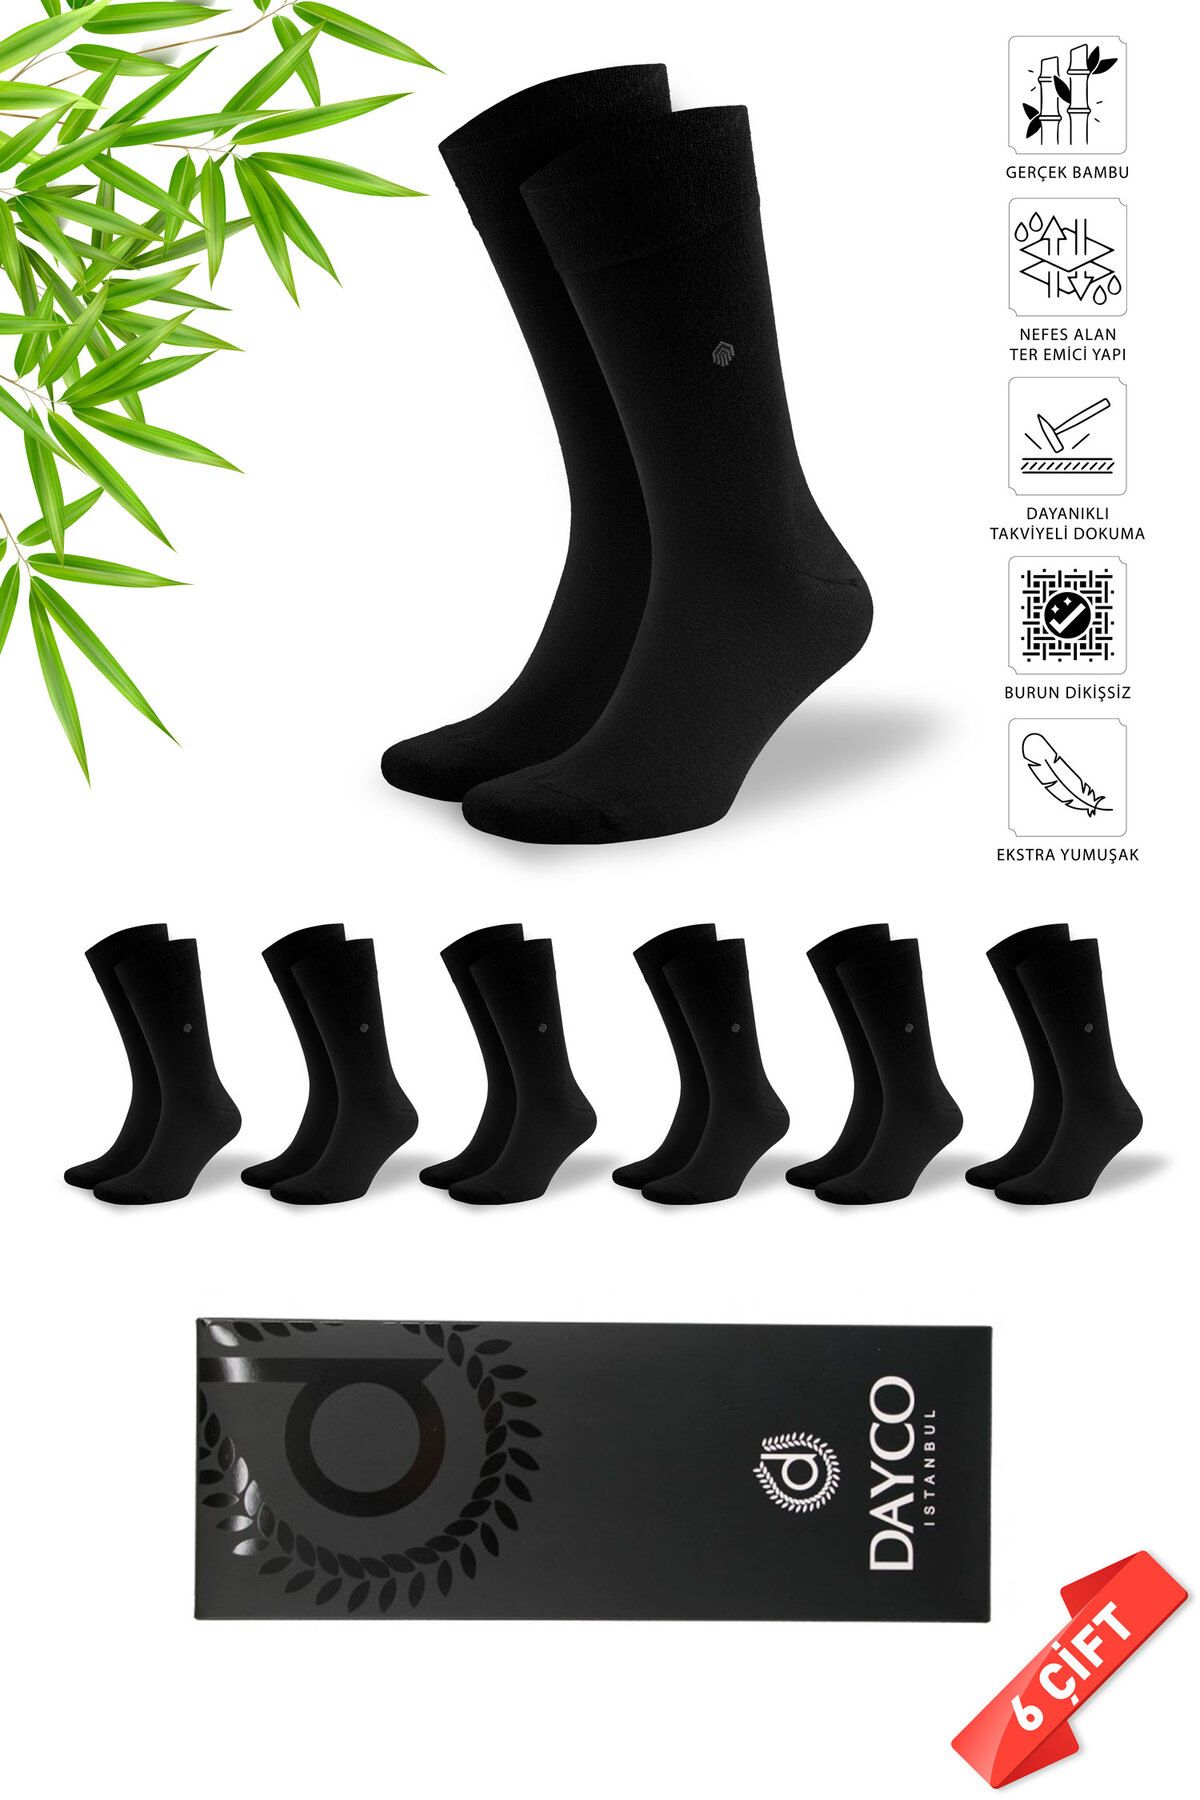 DAYCO Premium Klasik Uzun Boy Desensiz Siyah Renk Kışlık Erkek Bambu Soket Çorap